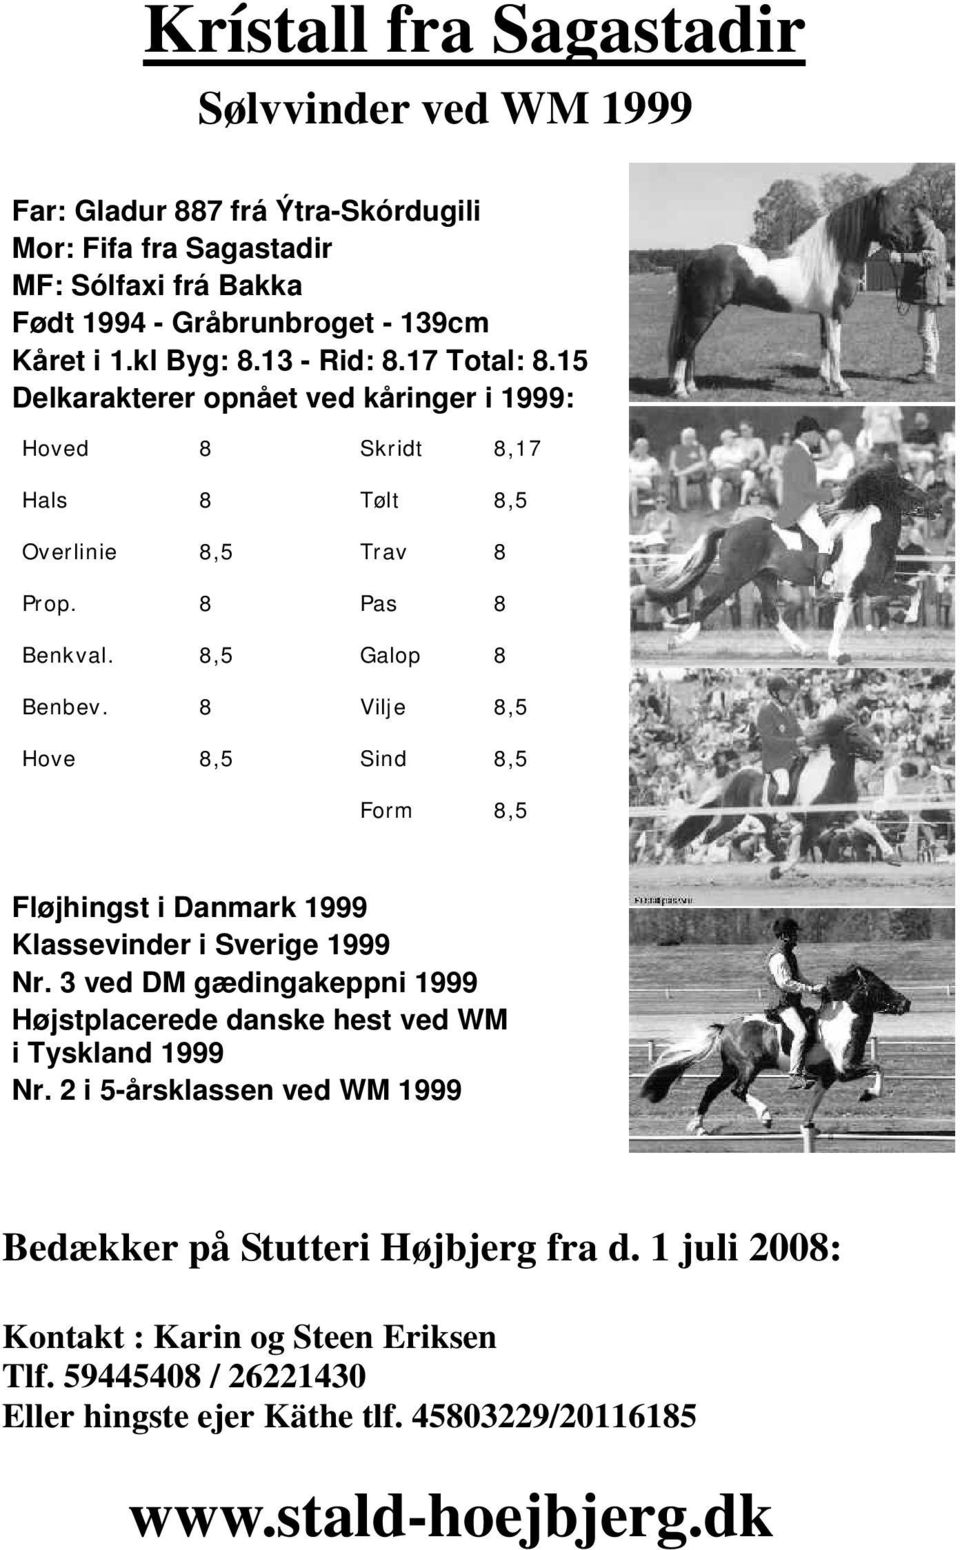 8 Vilje 8,5 Hove 8,5 Sind 8,5 Form 8,5 Fløjhingst i Danmark 1999 Klassevinder i Sverige 1999 Nr. 3 ved DM gædingakeppni 1999 Højstplacerede danske hest ved WM i Tyskland 1999 Nr.